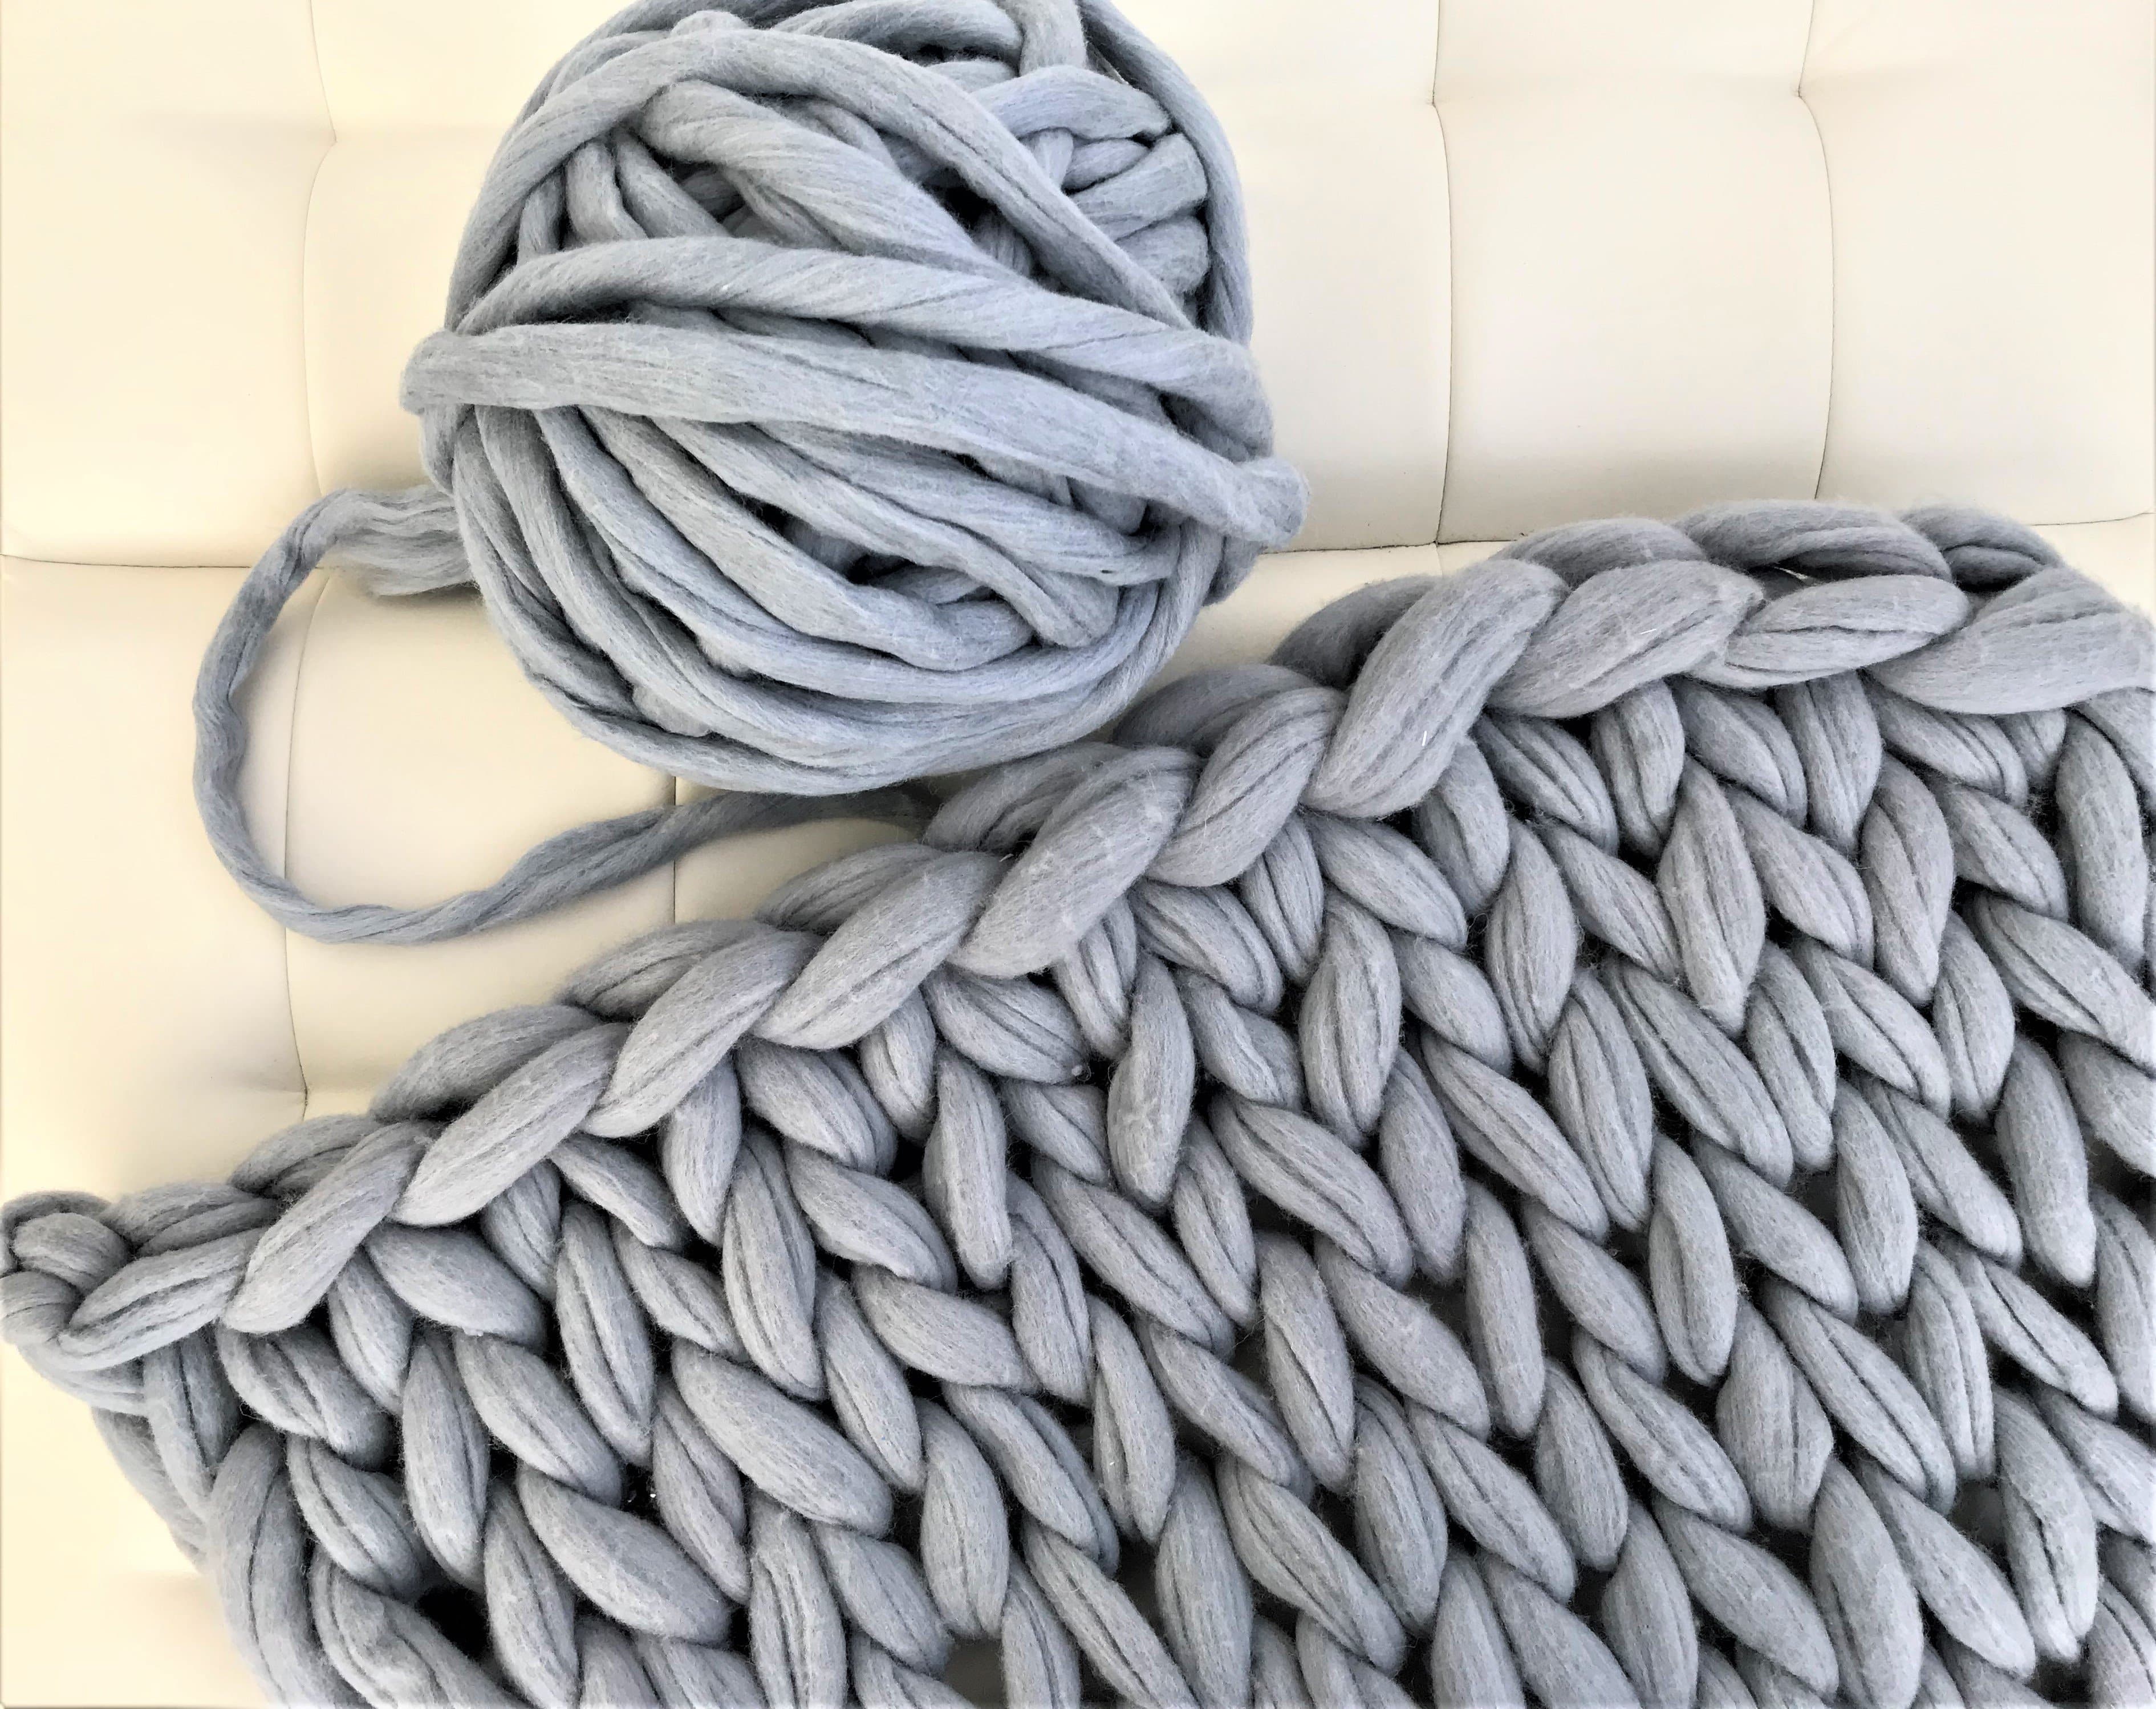 DIY Arm Knitting Kit For A Blanket 35x50 BeCozi